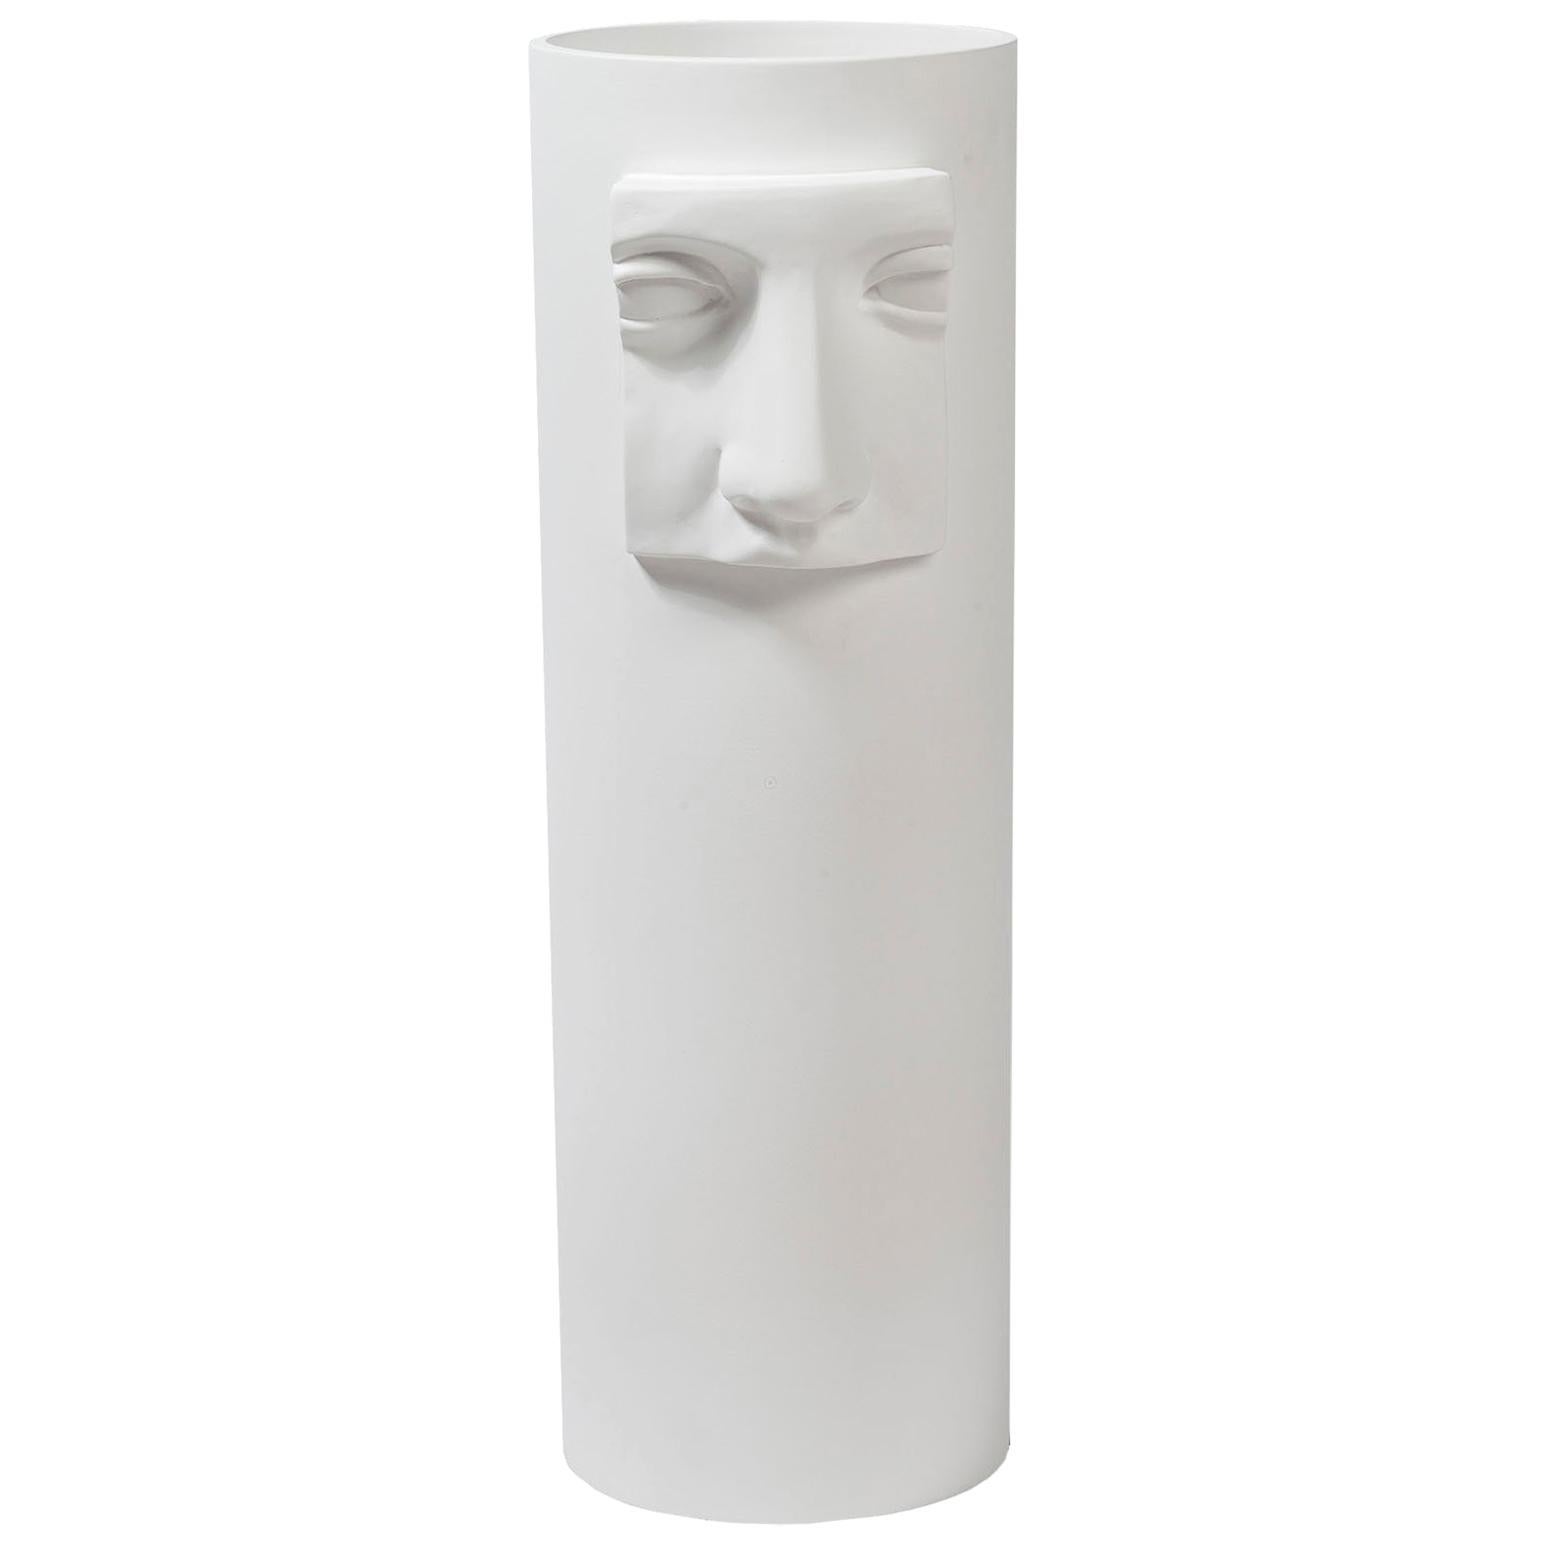 Vase Juno's Nose, Matt White Ceramic, Italy